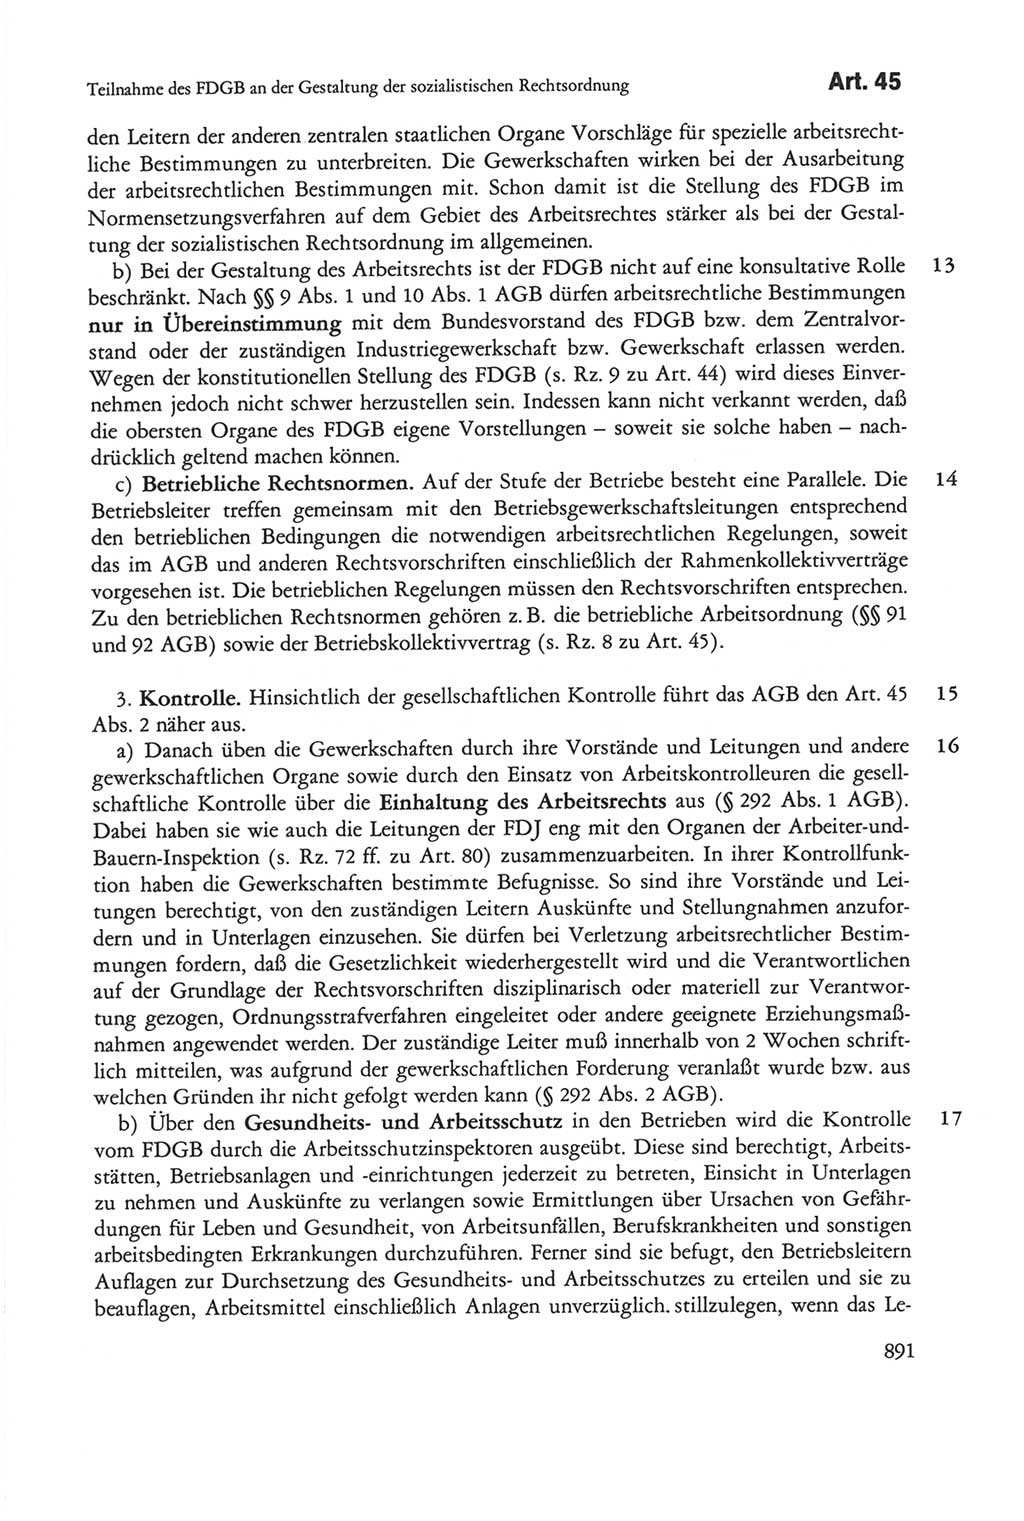 Die sozialistische Verfassung der Deutschen Demokratischen Republik (DDR), Kommentar 1982, Seite 891 (Soz. Verf. DDR Komm. 1982, S. 891)